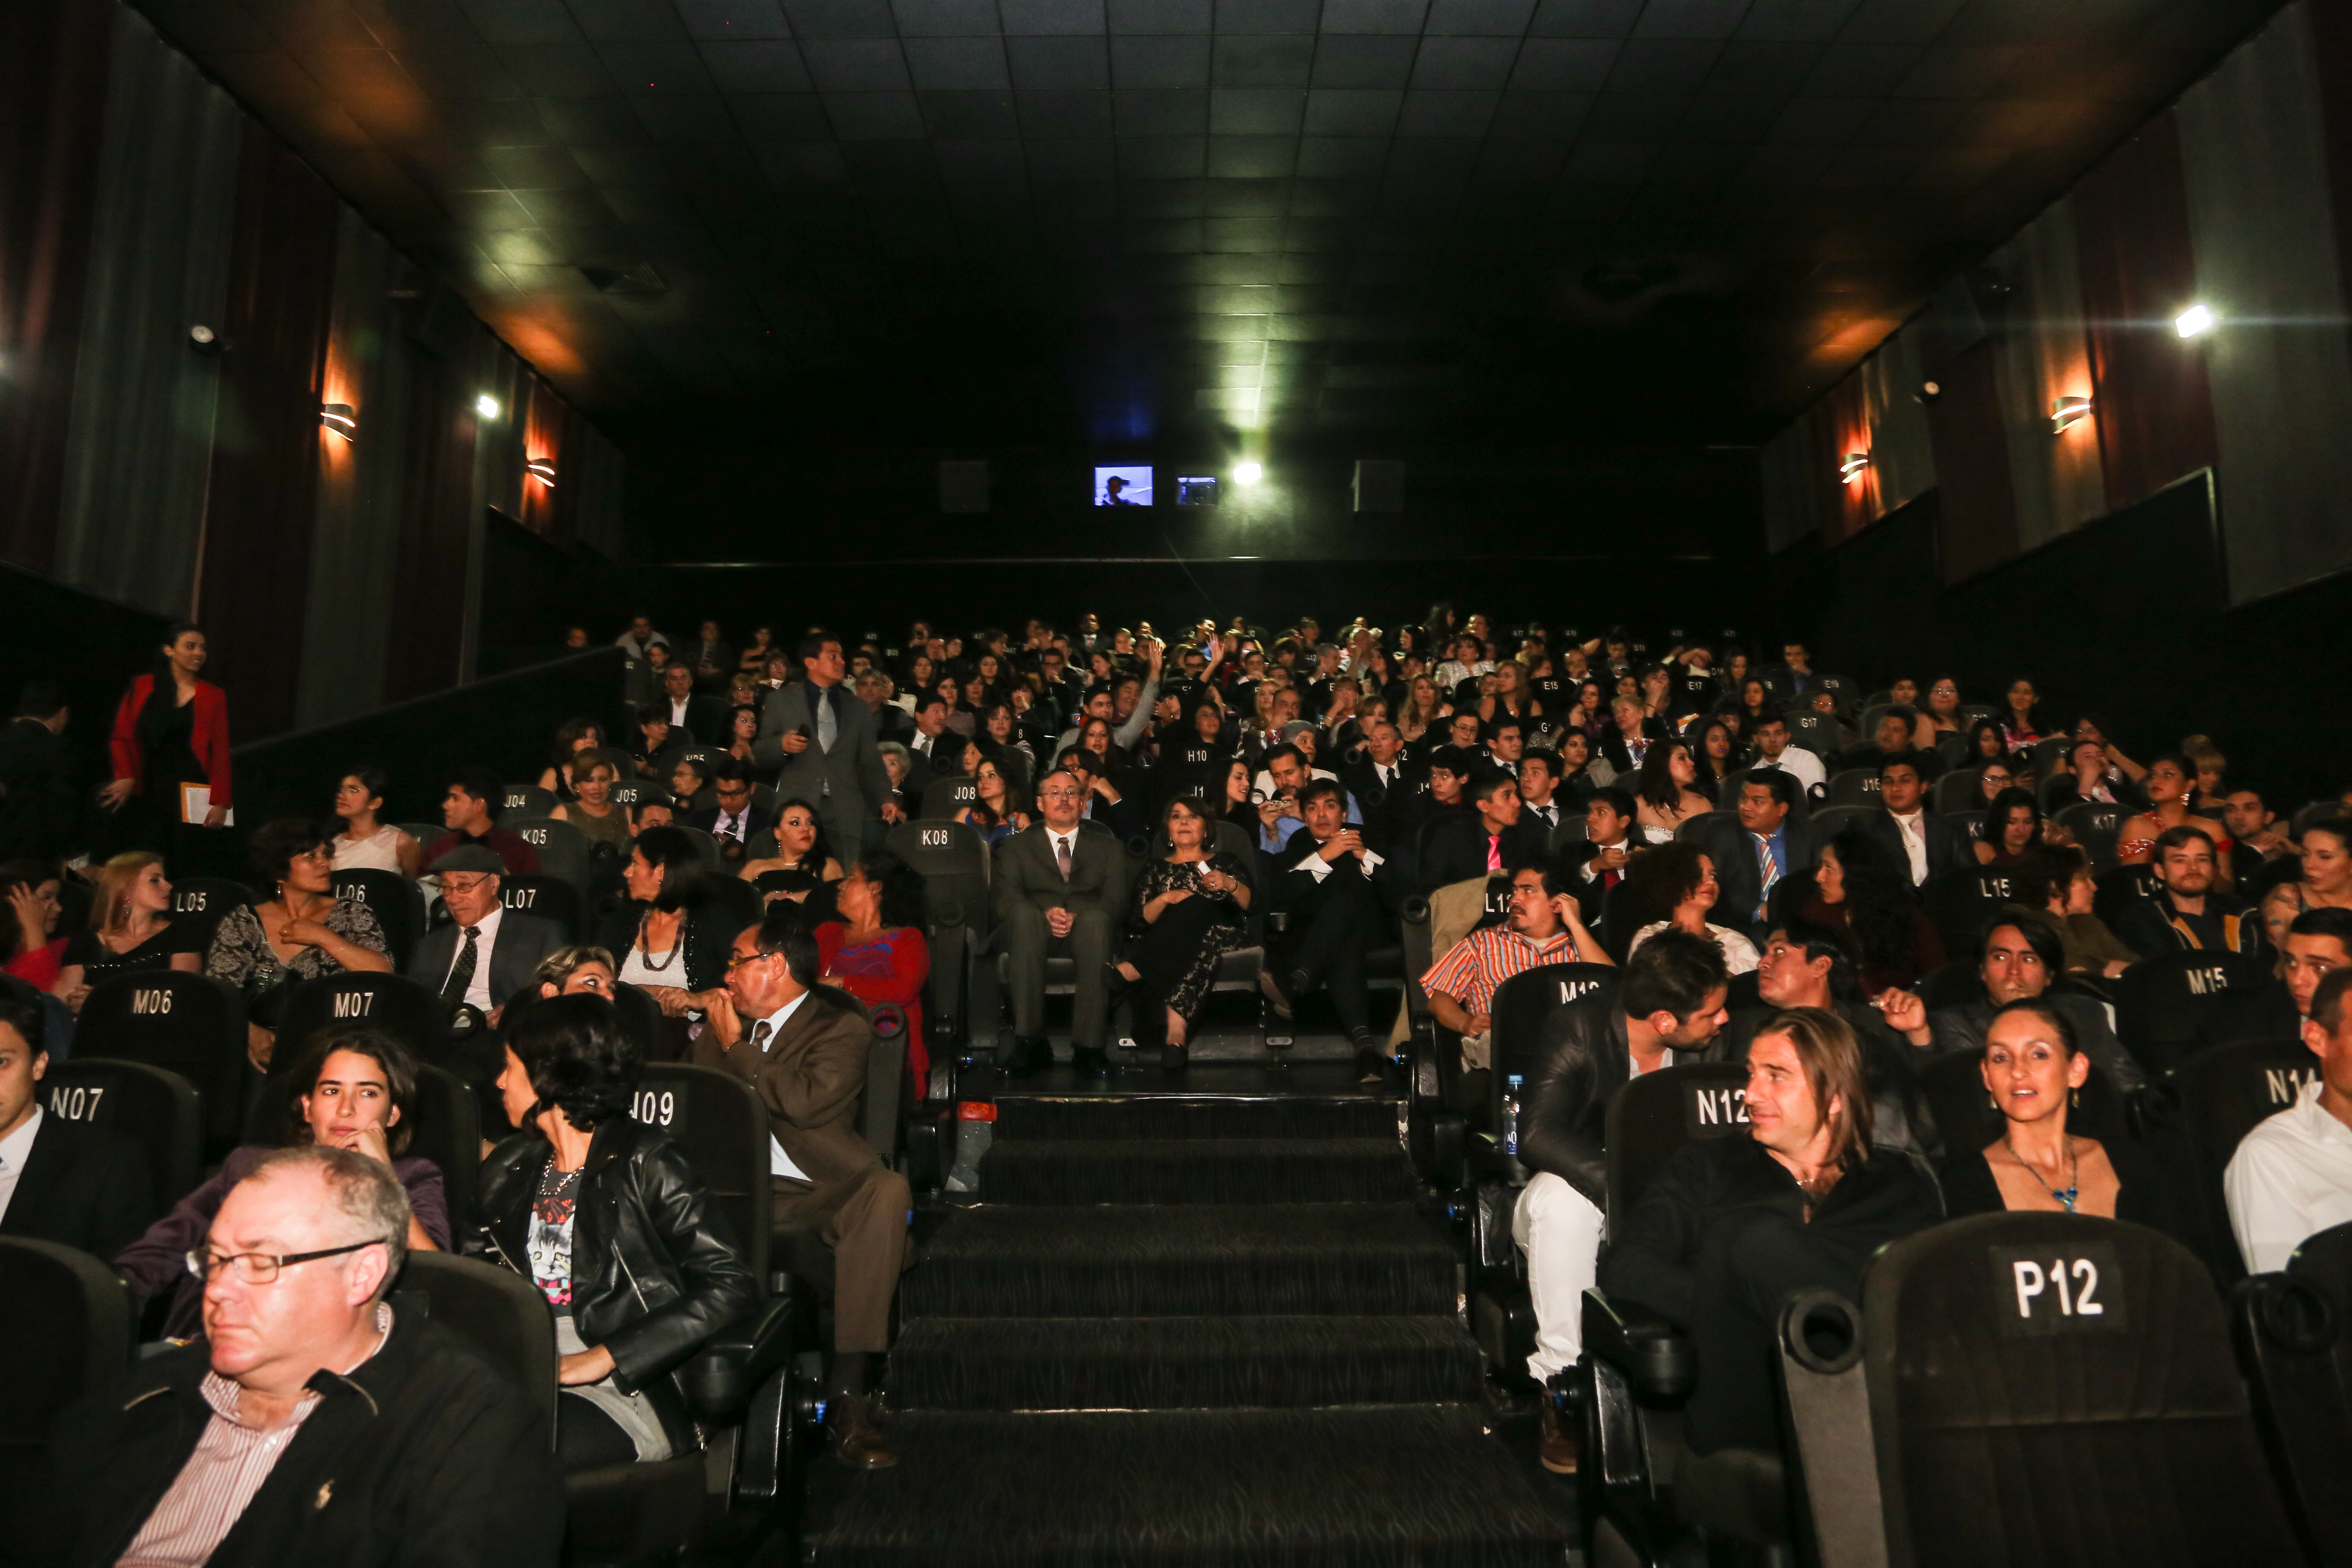 Premiere of Ambiguity: Crónica De Un Sueño Americano November 27th, 2014 in Guatemala